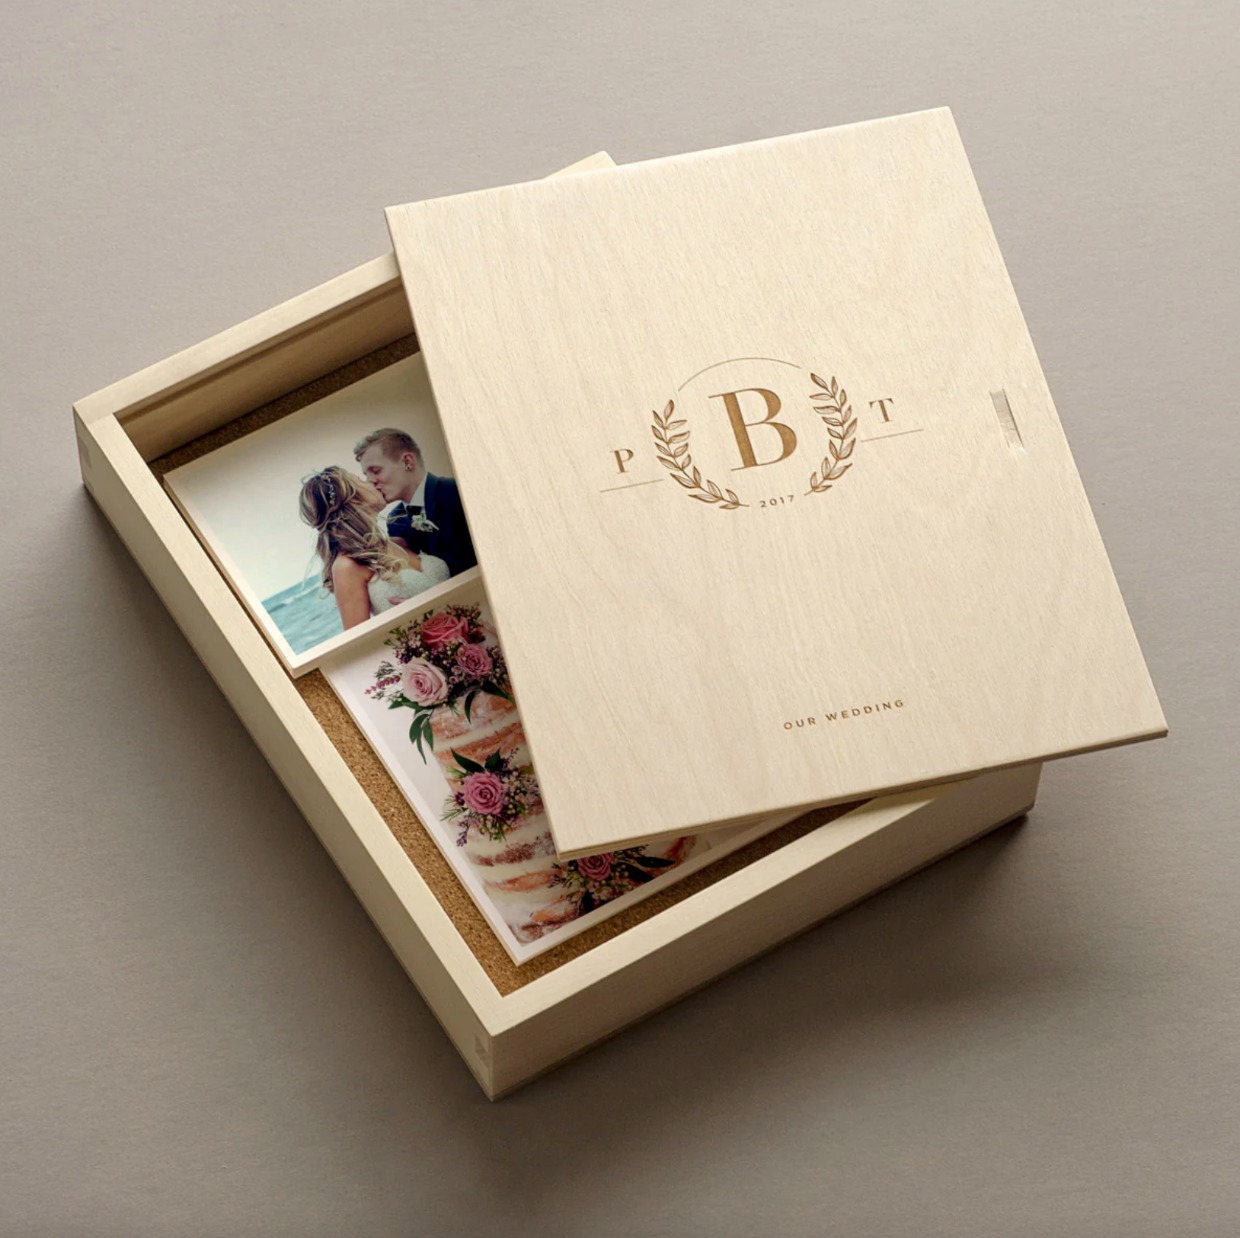 Photo memory box gift